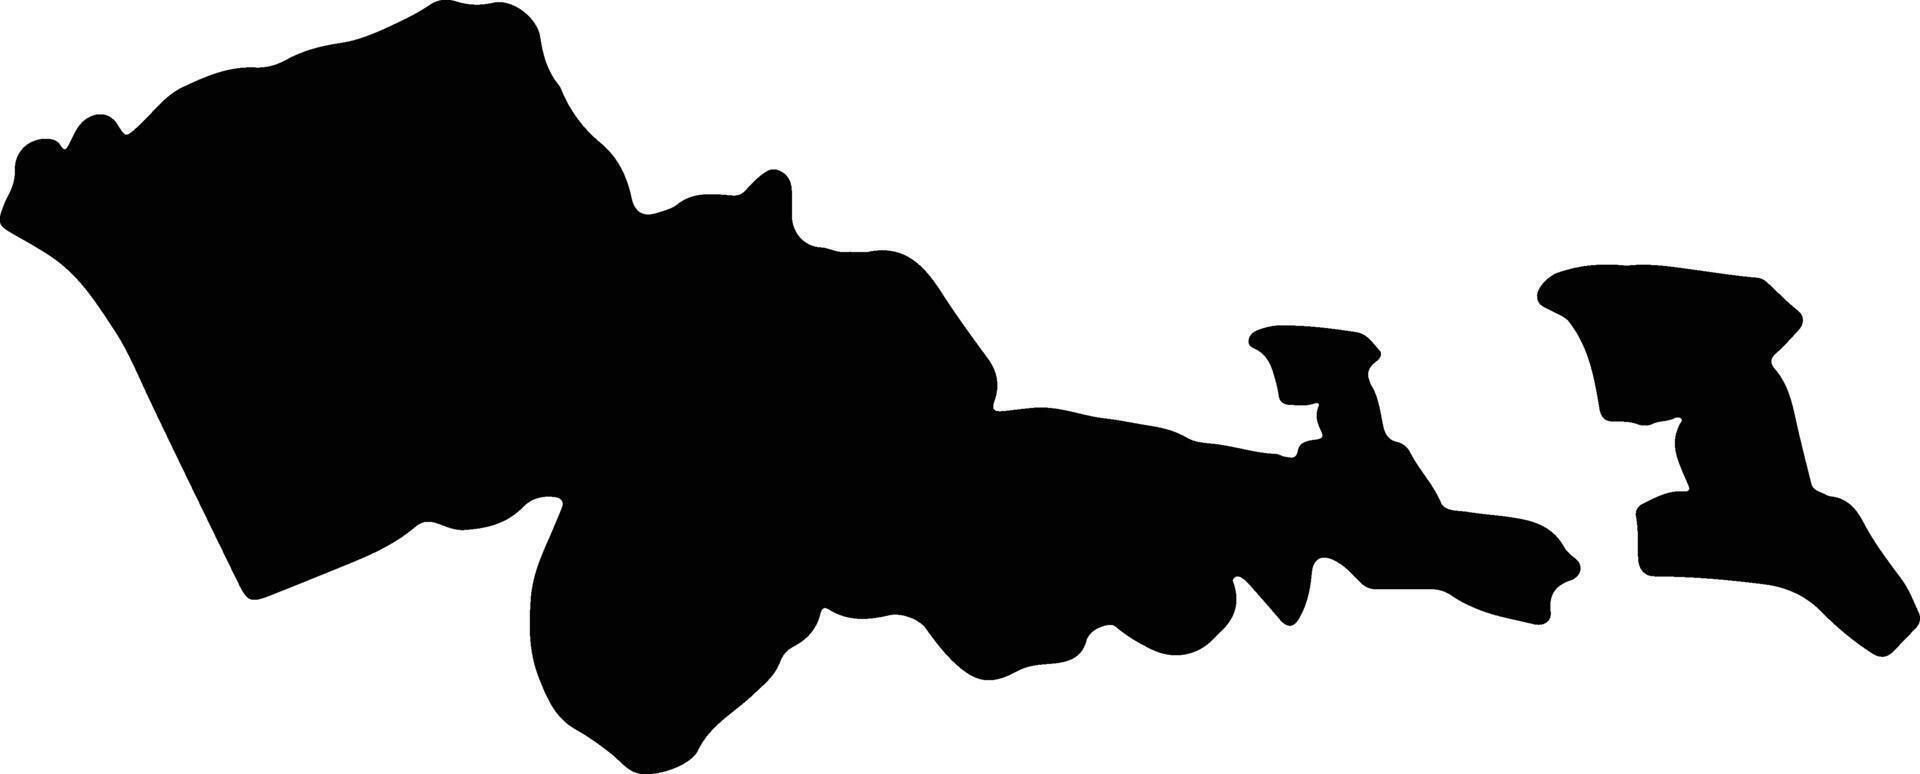 mafeteng Lesoto silhouette carta geografica vettore